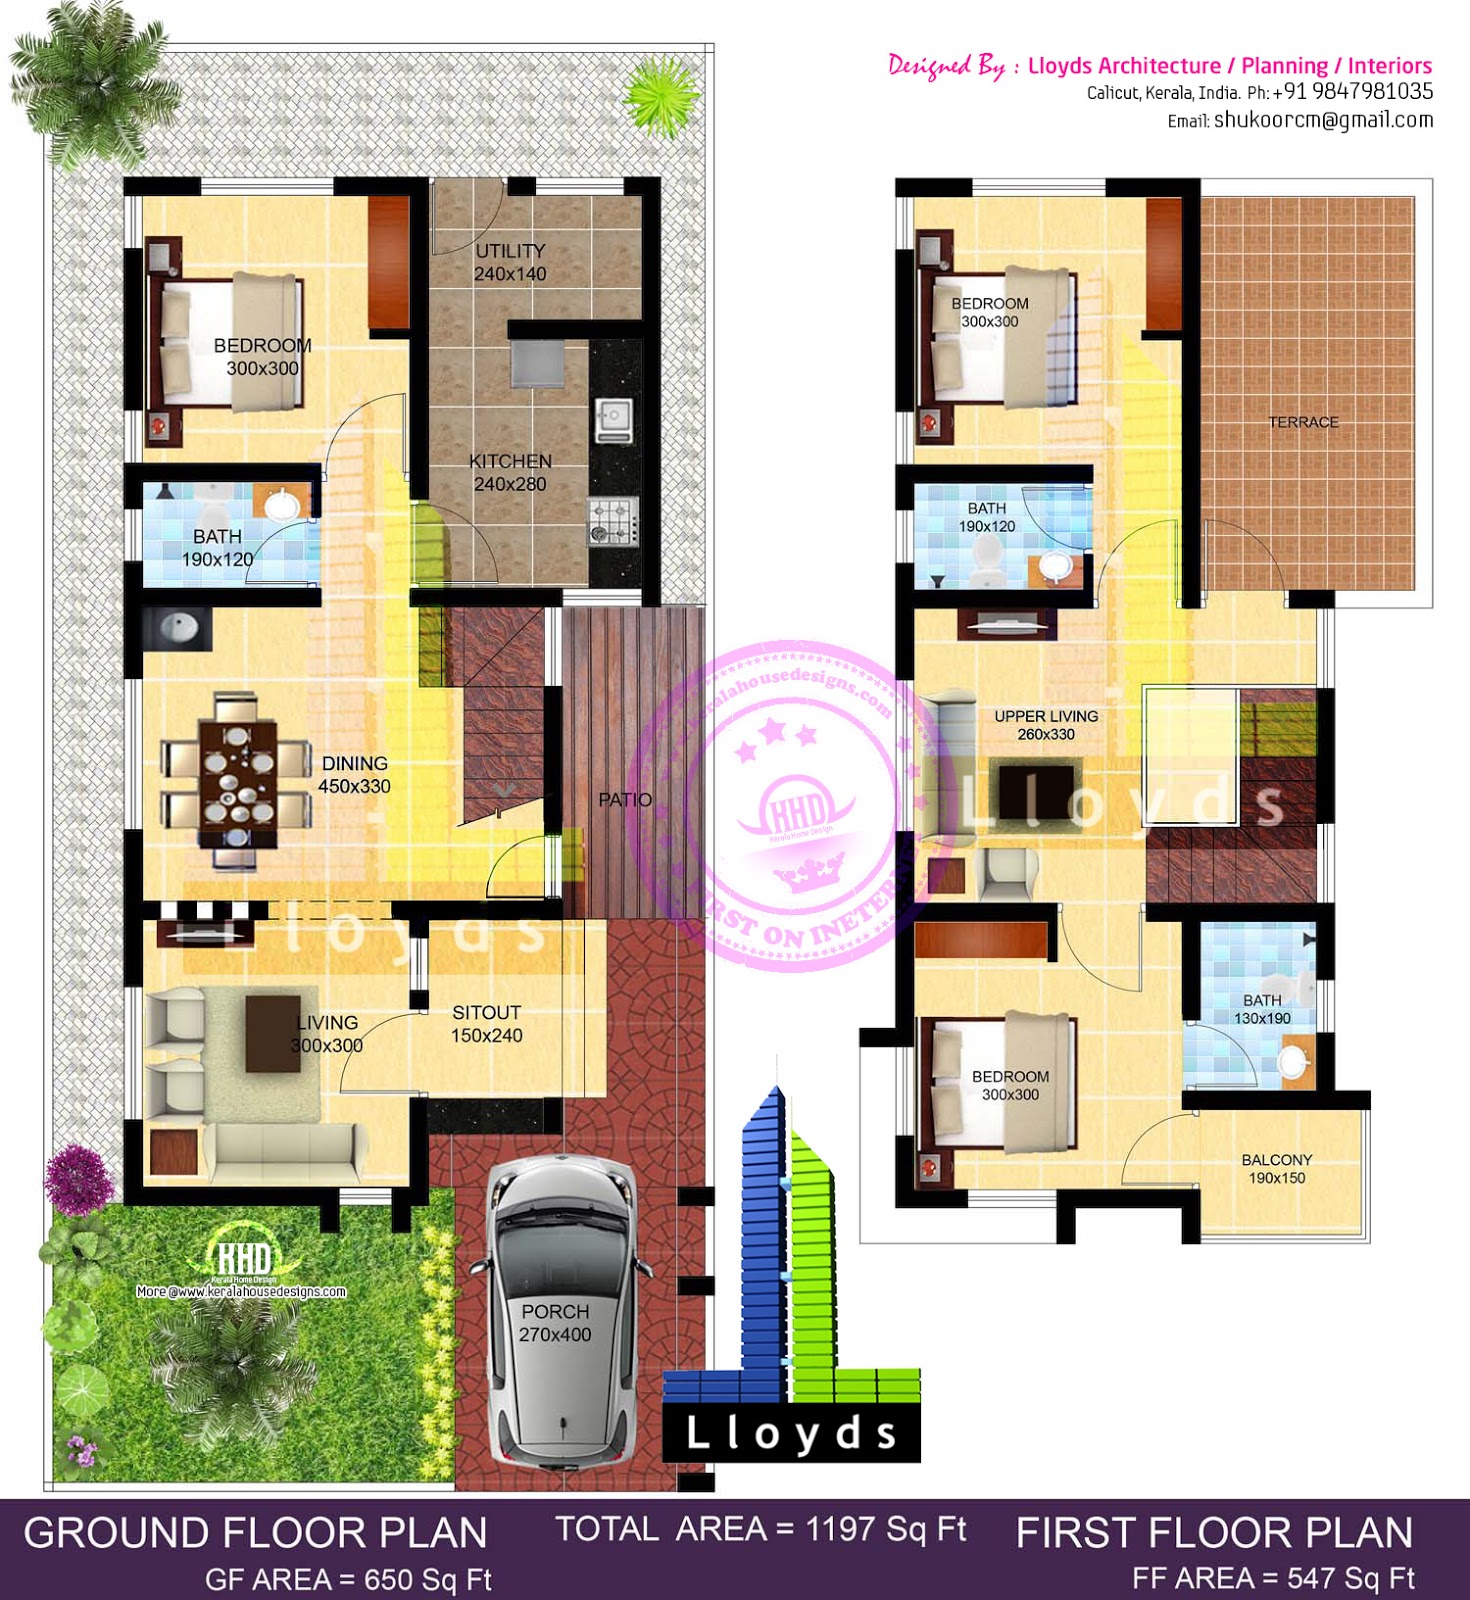 1197 sqft 3 bedroom villa in 3 cents plot Home Kerala Plans